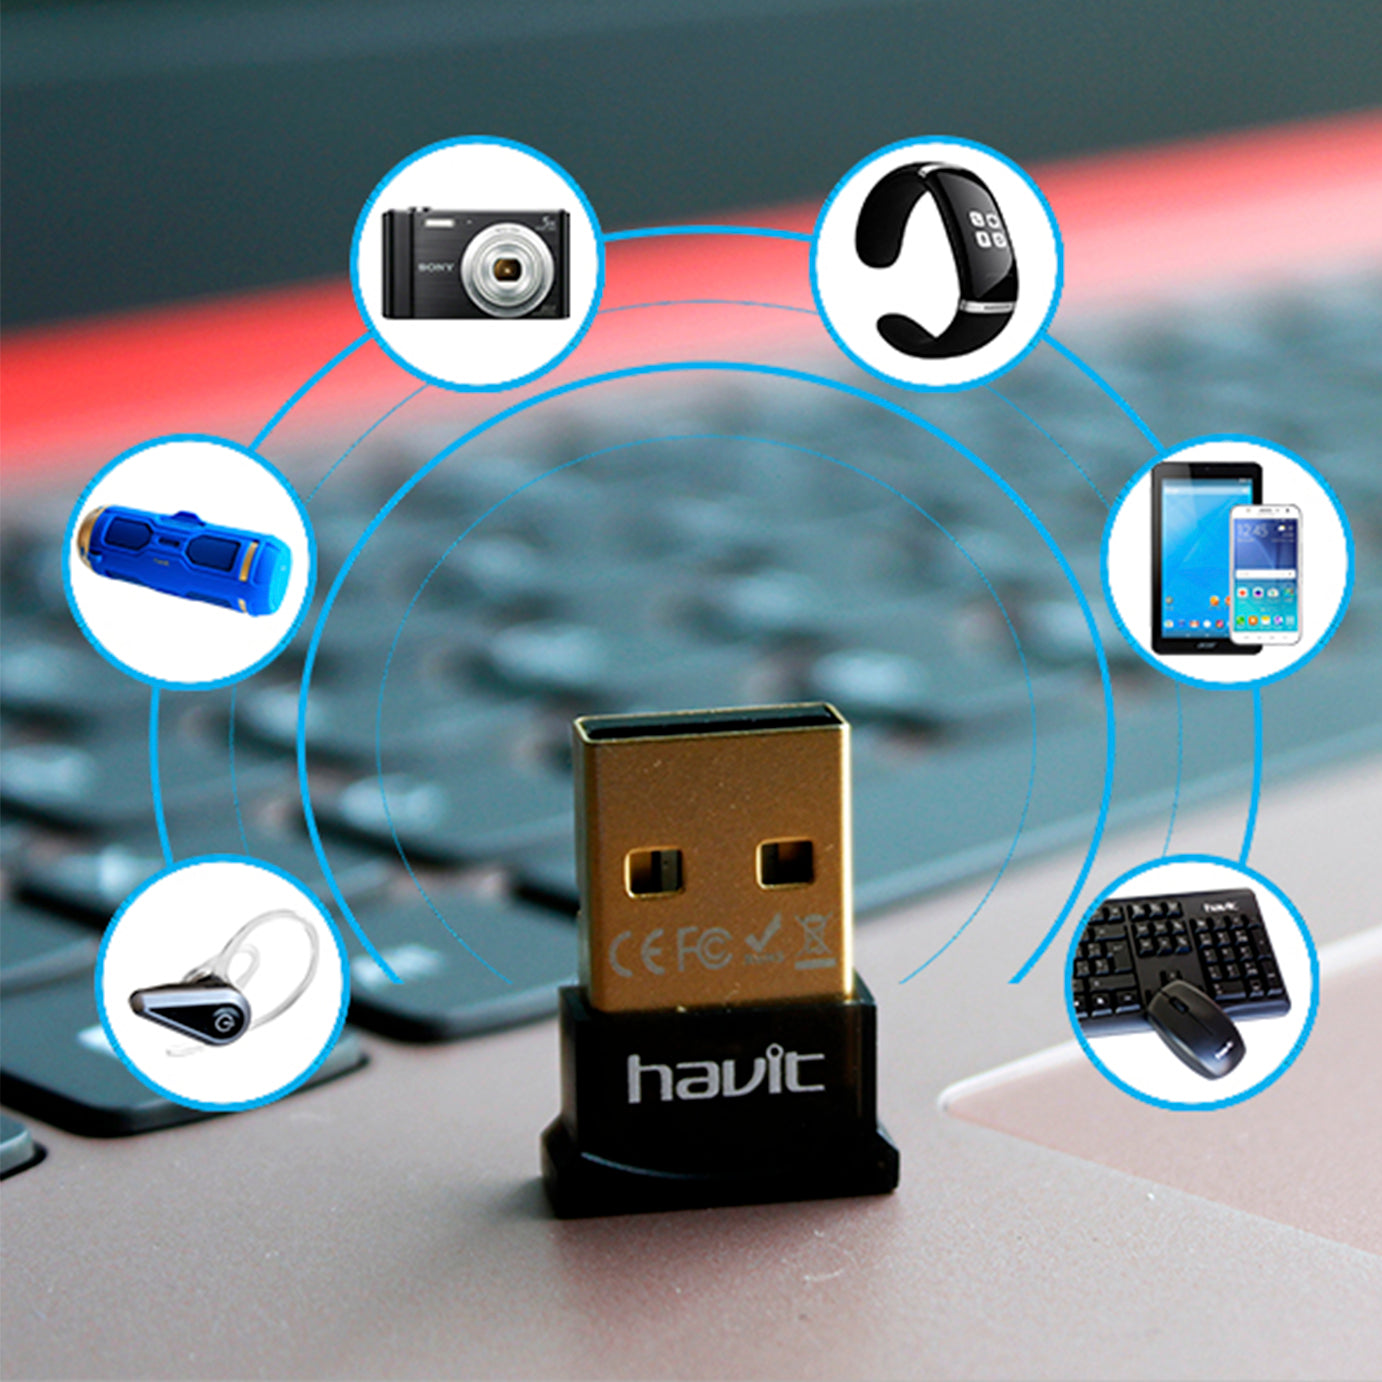 ADAPTADOR BLUETOOTH HAVIT USB HV-888